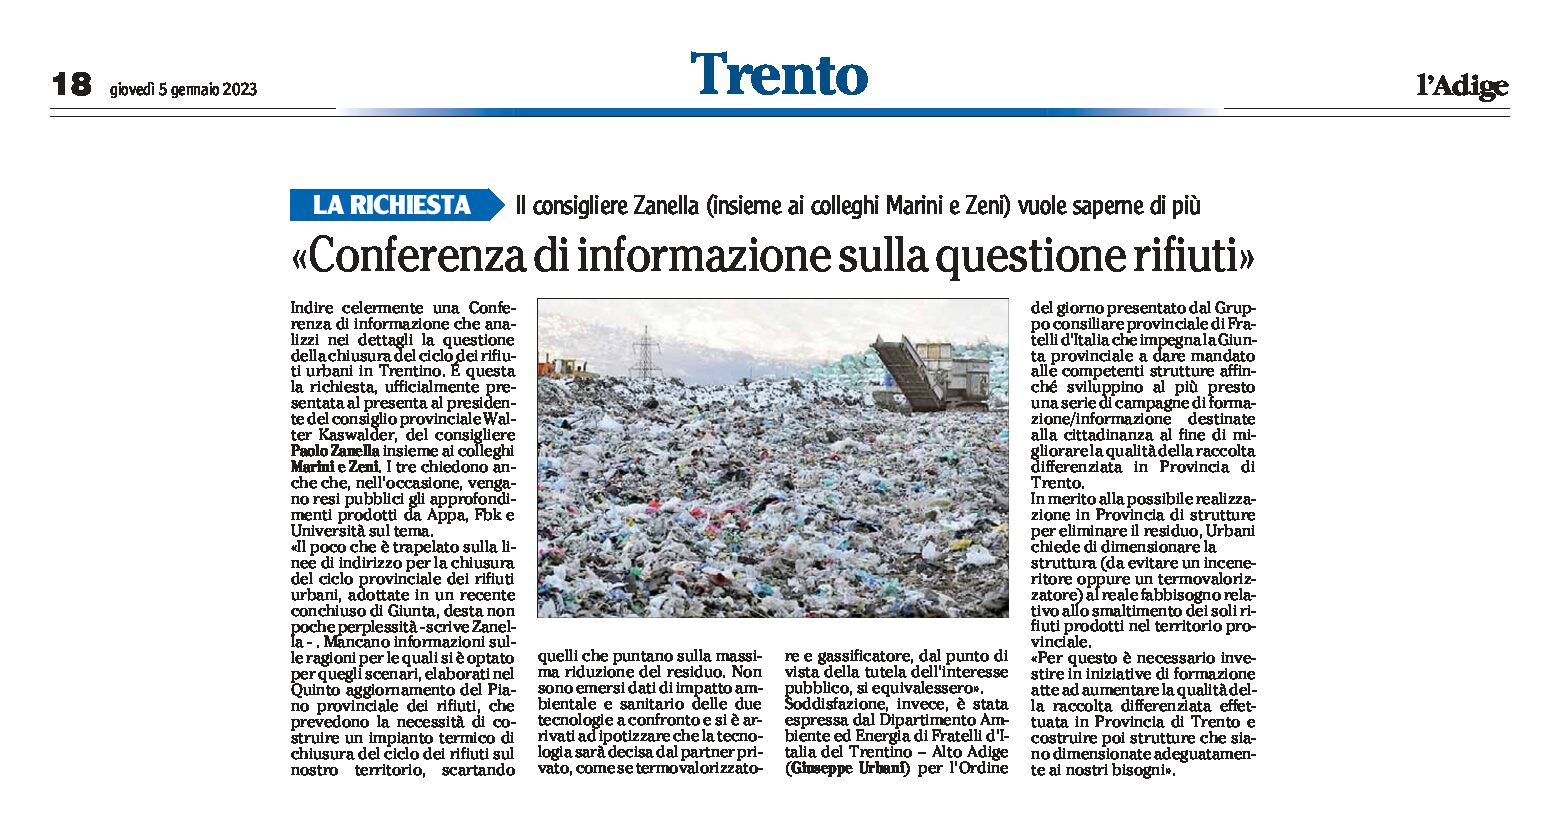 Trento: richiesta una Conferenza di informazione sulla questione dei rifiuti